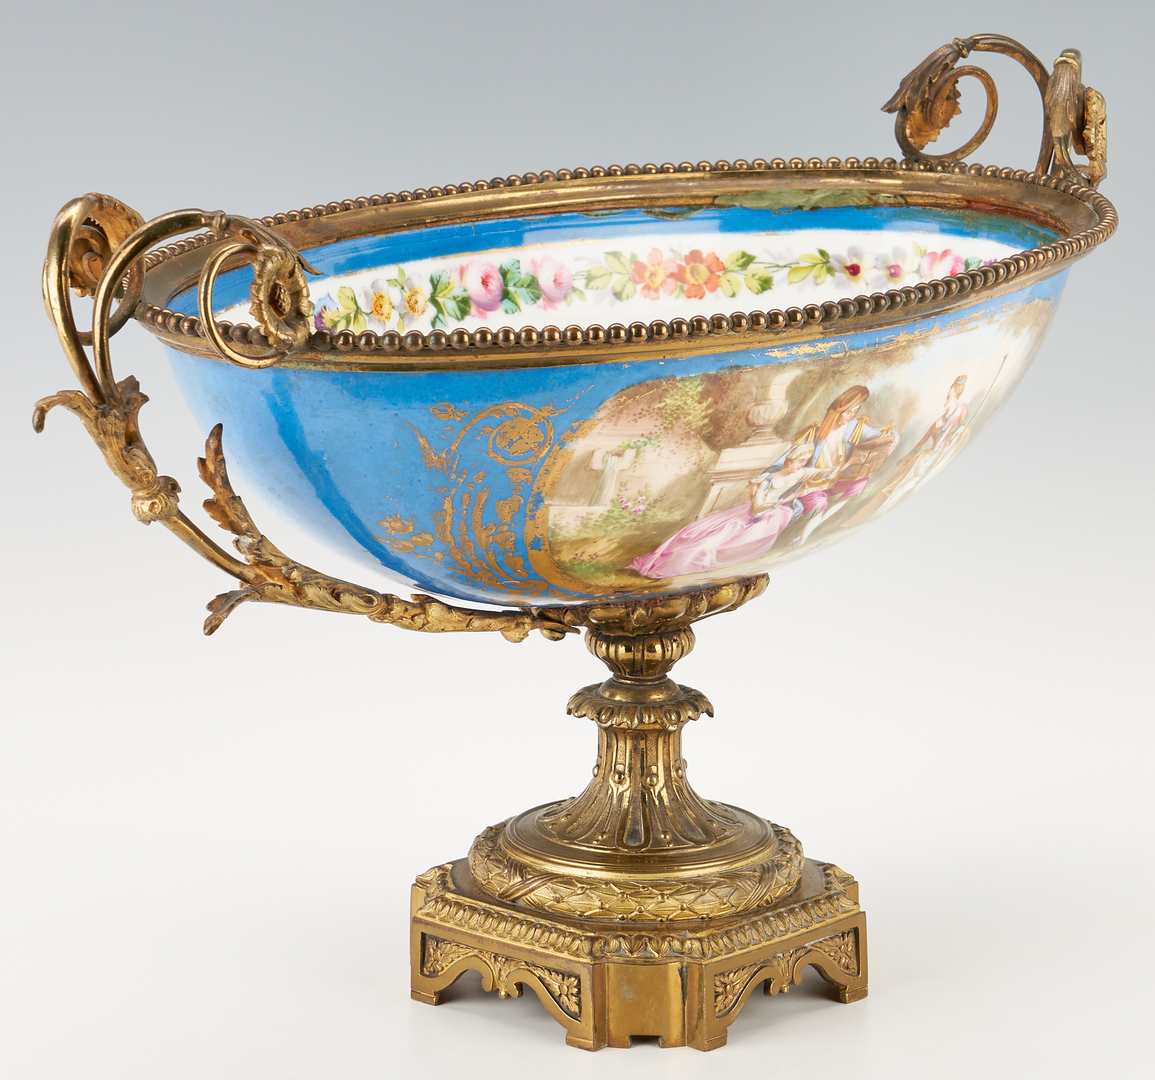 Lot 133: Sevres Style Porcelain Centerpiece Bowl, Gilt Bronze Mounts